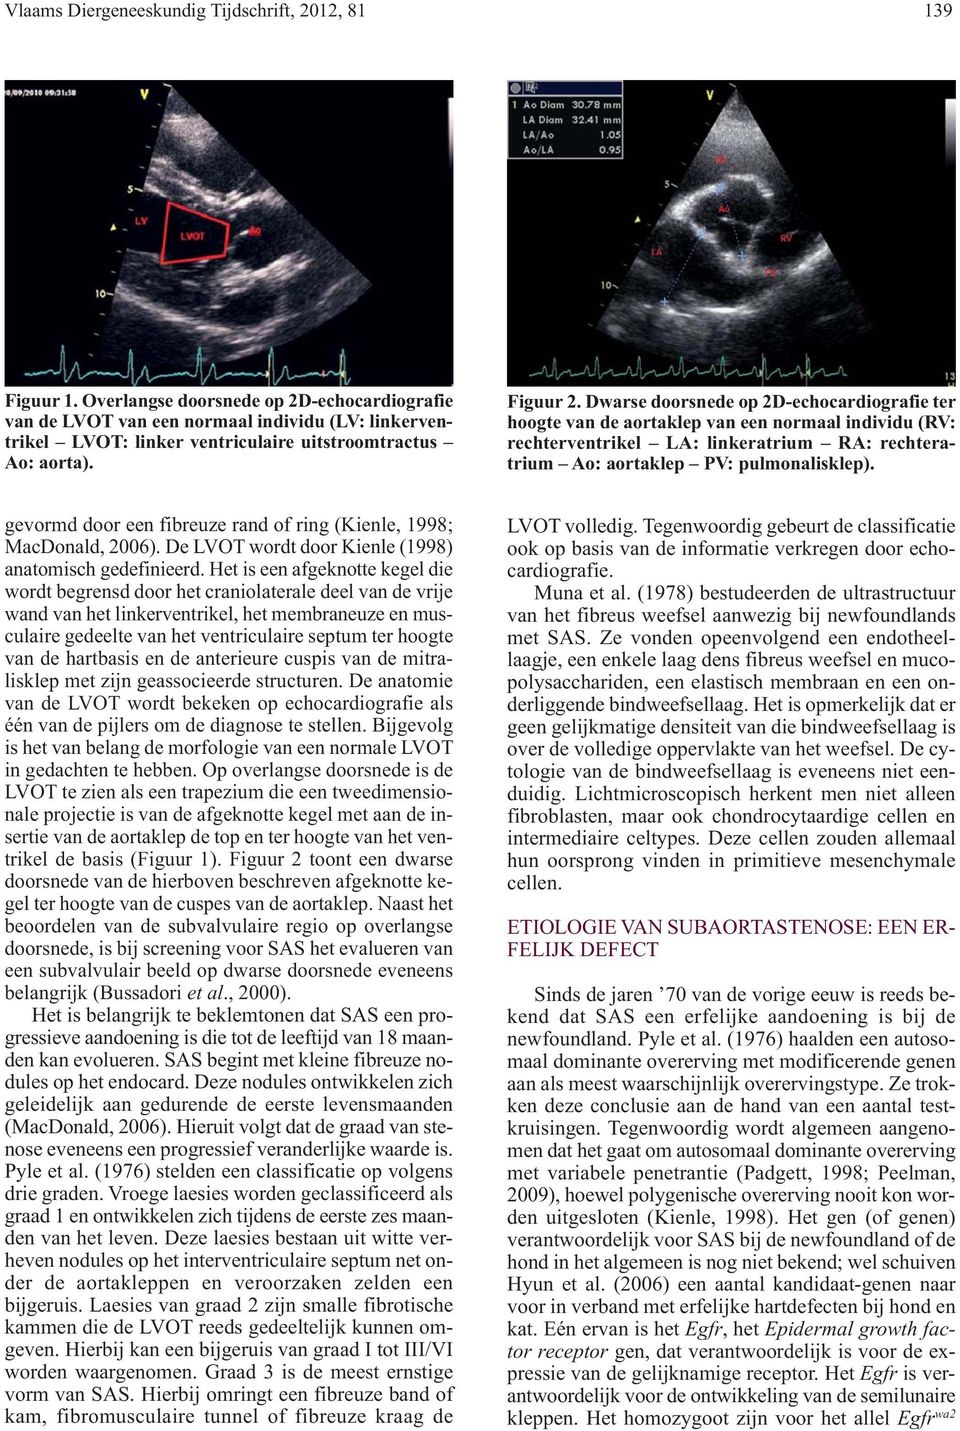 Dwarse doorsnede op 2D-echocardiografie ter hoogte van de aortaklep van een normaal individu (RV: rechterventrikel LA: linkeratrium RA: rechteratrium Ao: aortaklep PV: pulmonalisklep).